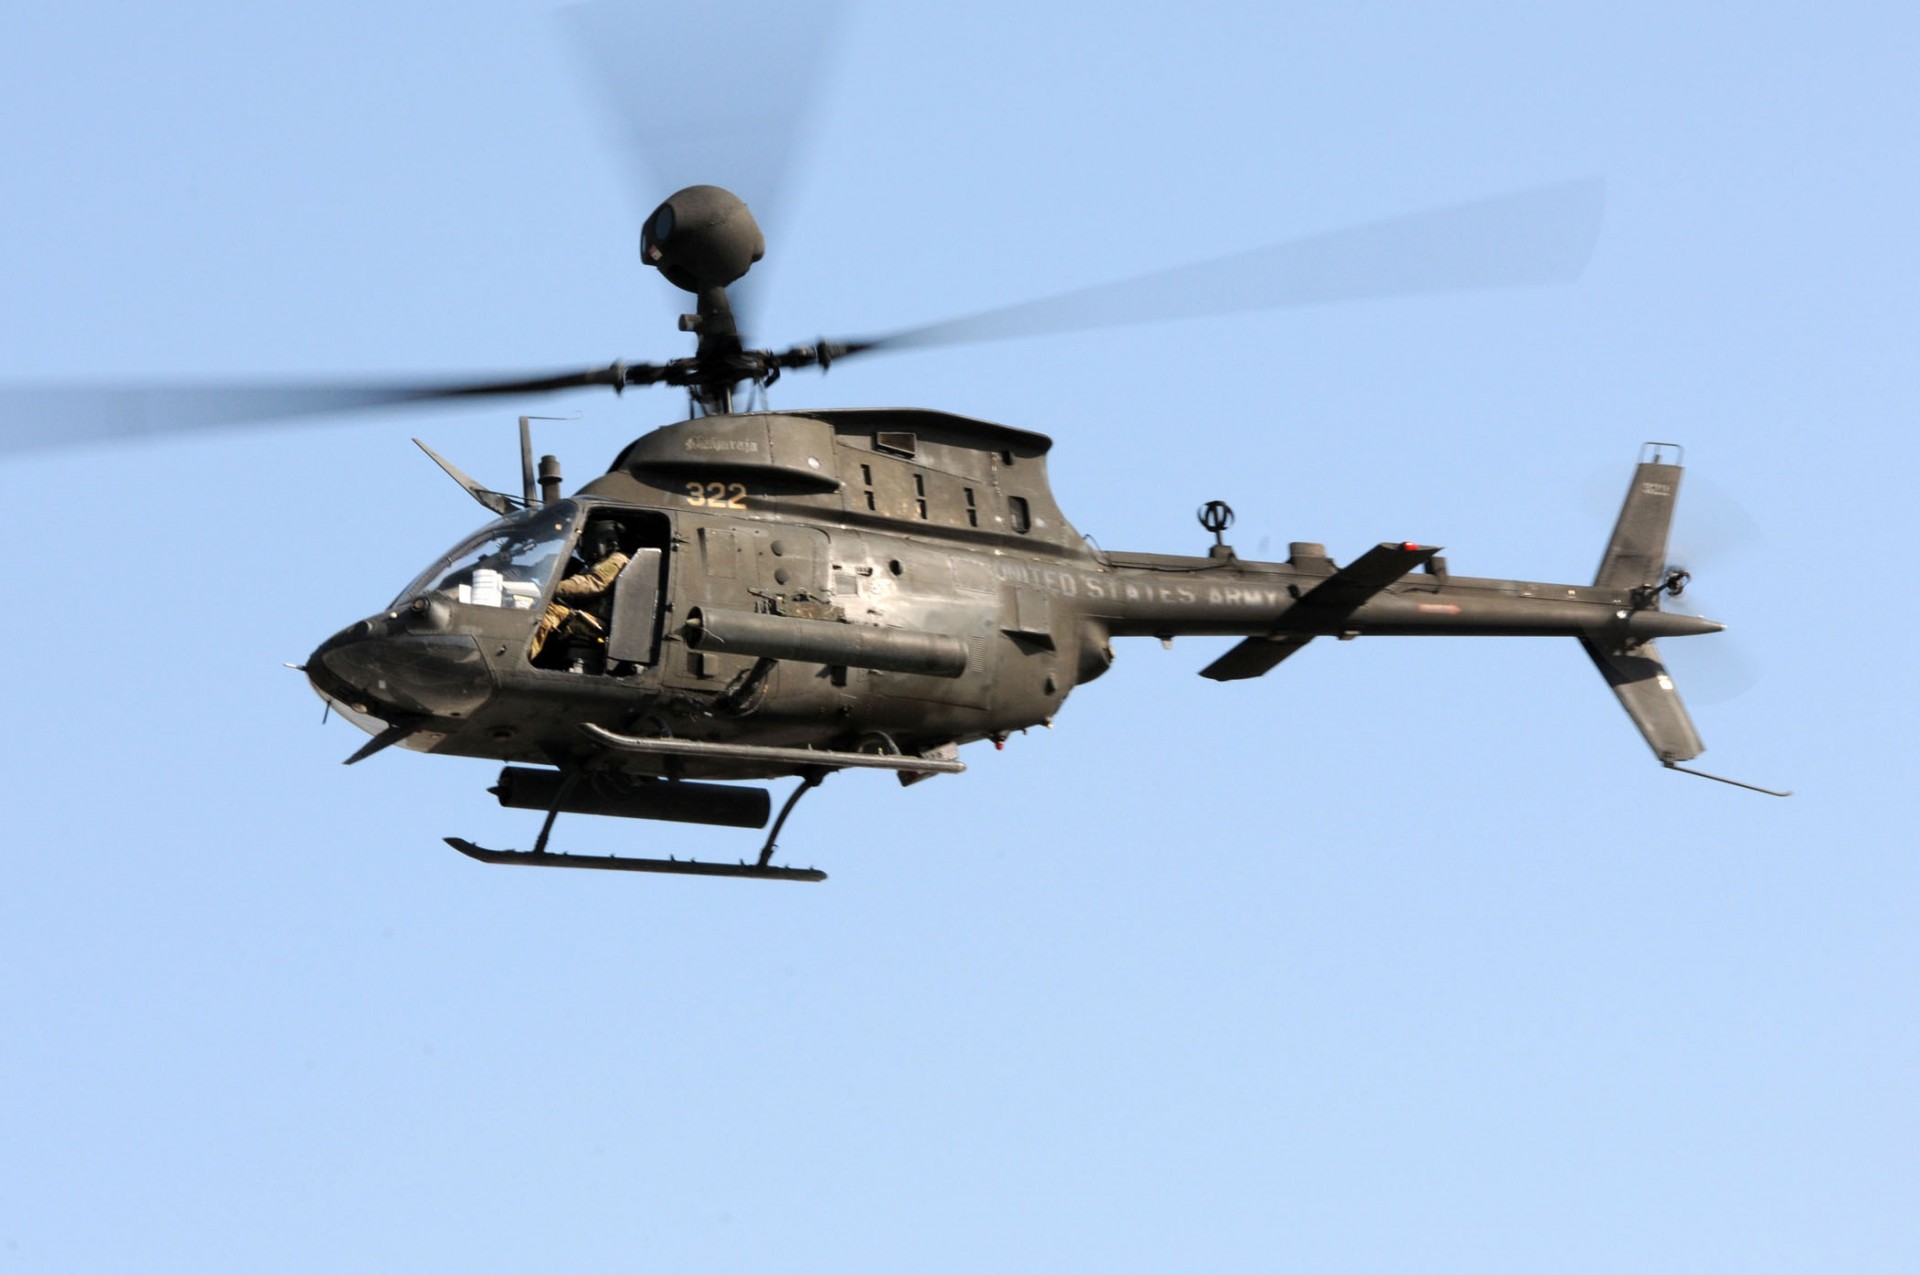 Amerykanie chcą wycofać z linii wszystkie śmigłowce OH-58 Kiowa – fot. U.S. Army/Staff Sgt. Donna